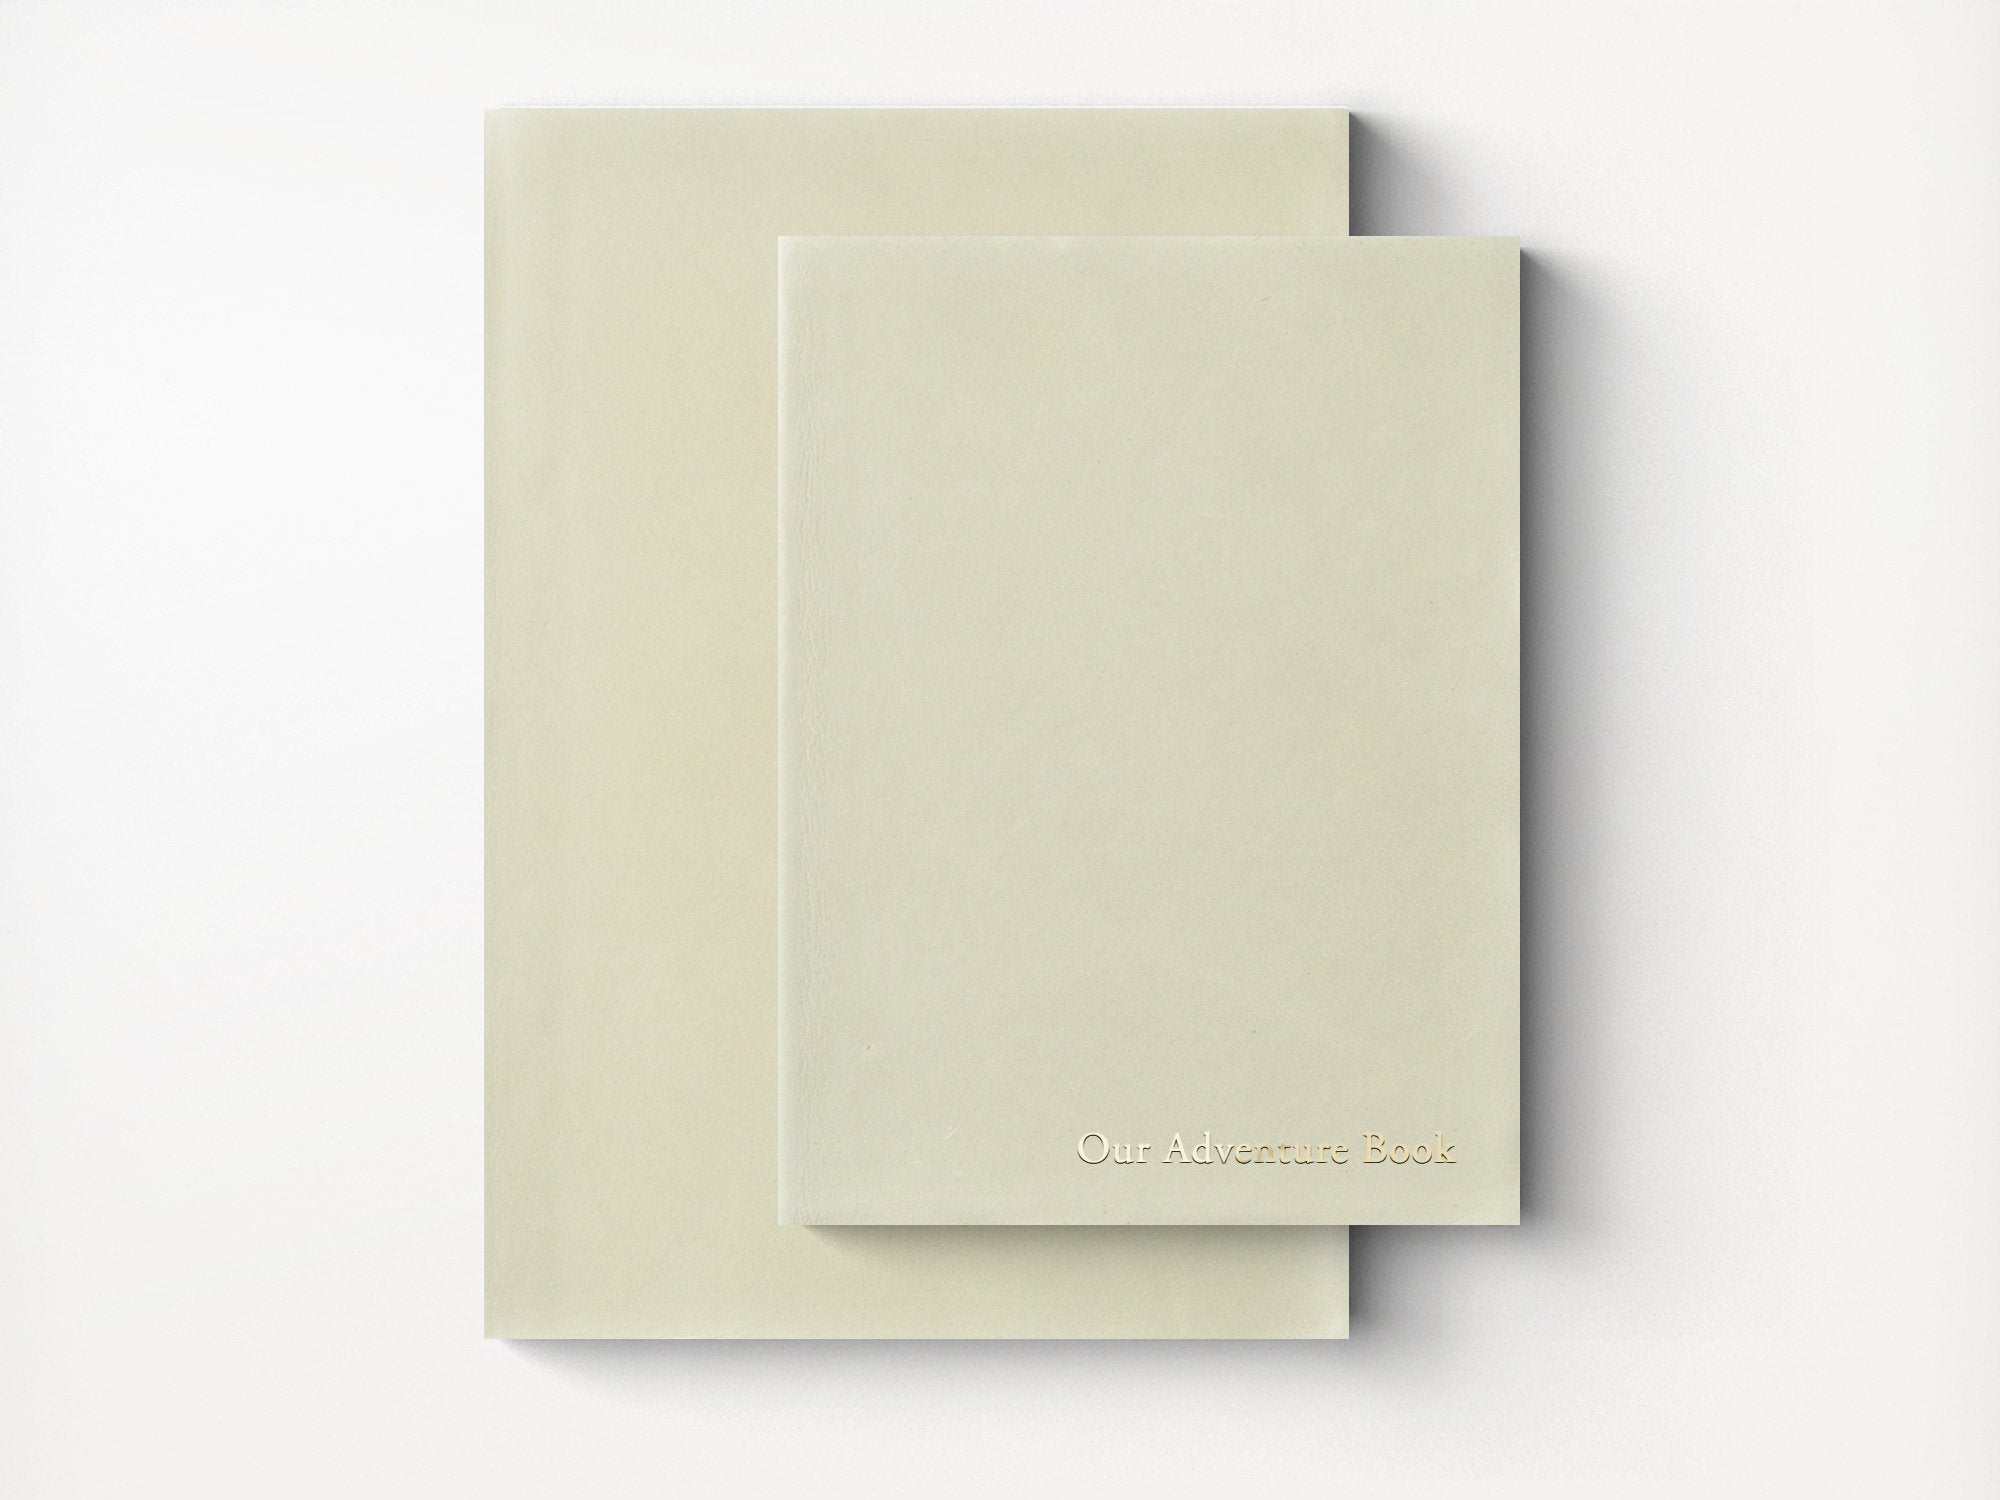 Mount Everest Extra Large Leather Sketchbook – Jenni Bick Custom Journals